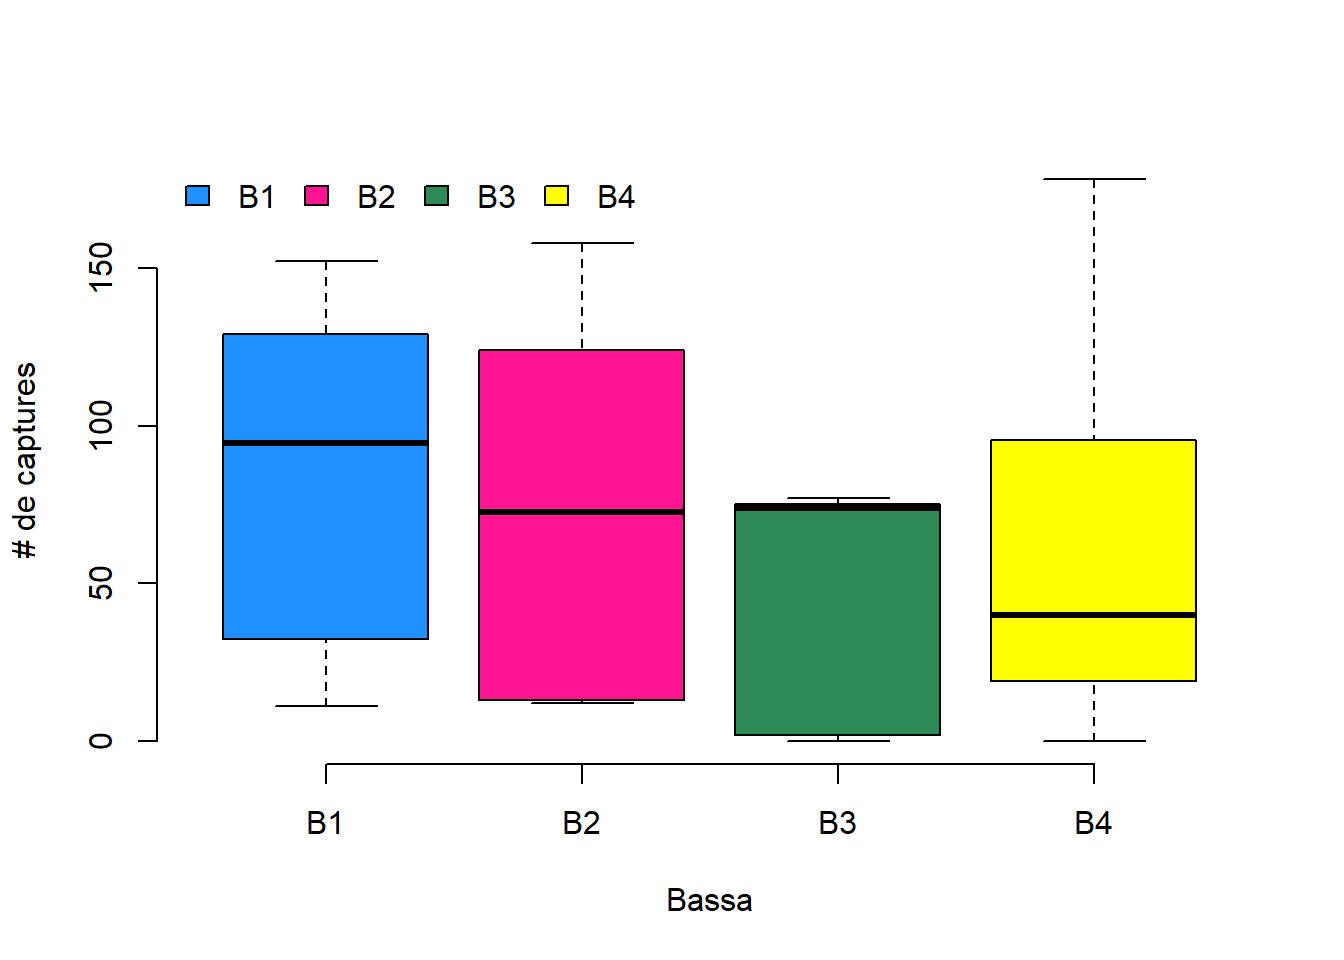 Box plots del nombre de captures per bassa